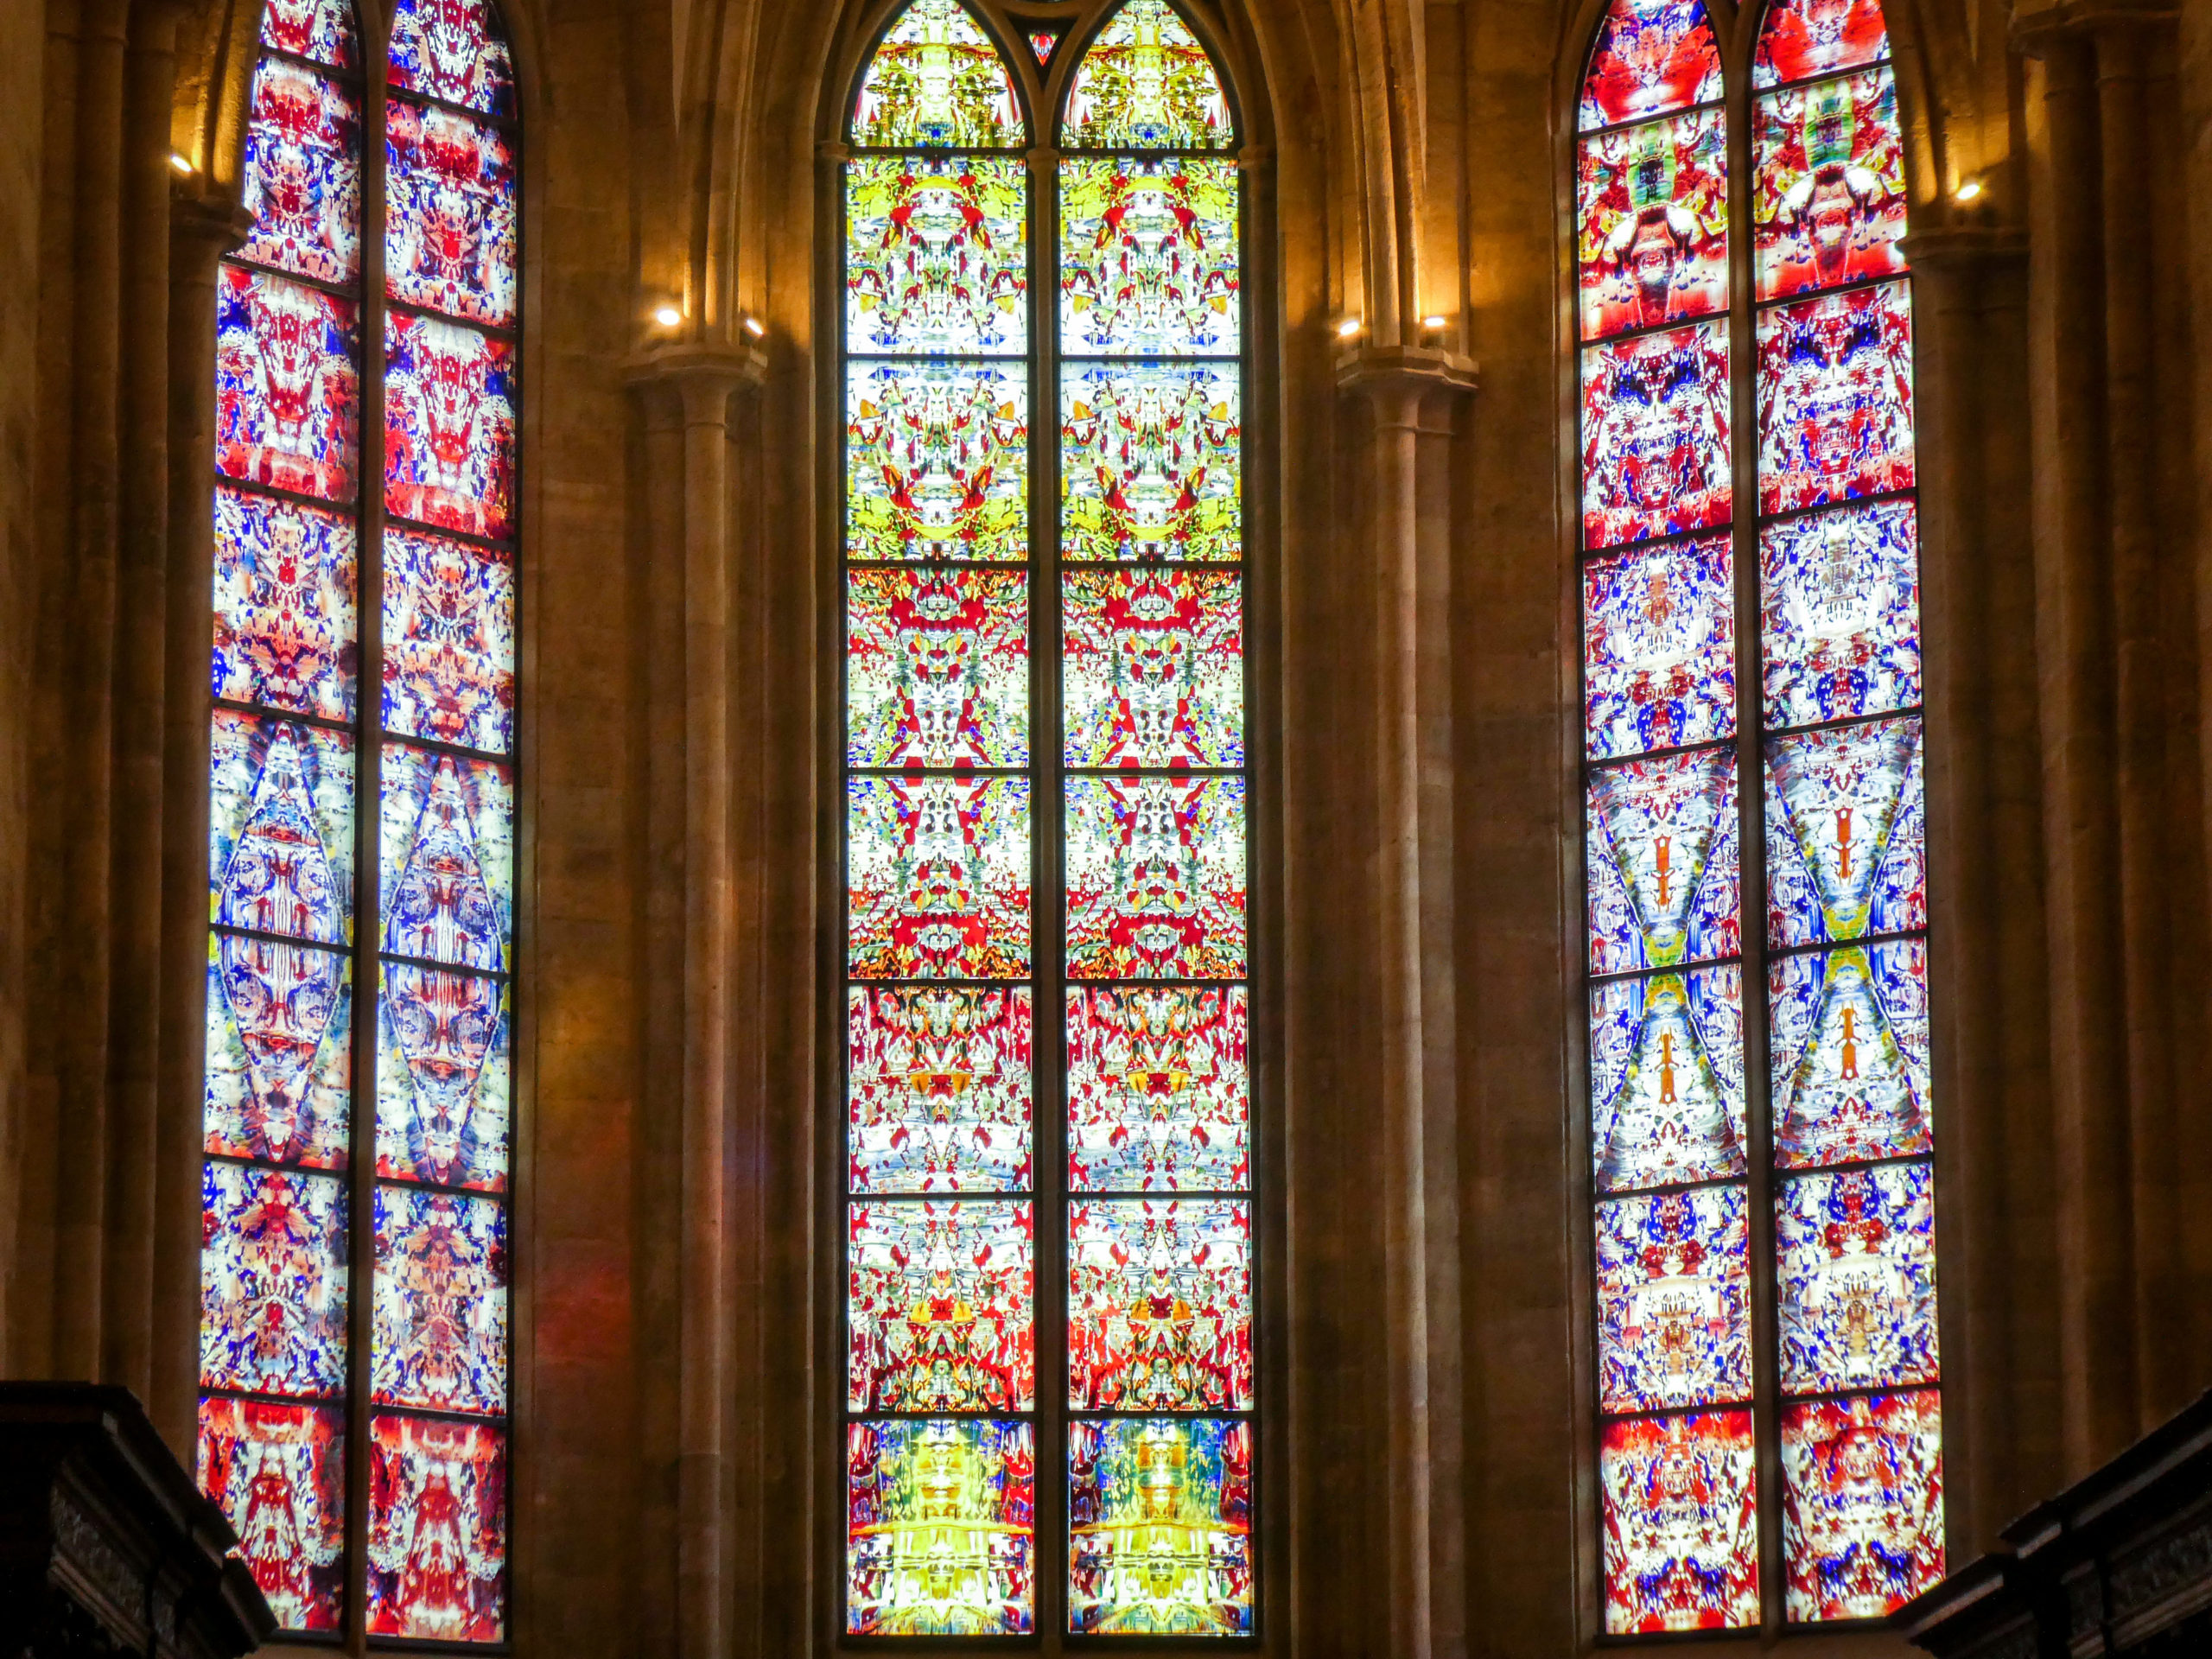 Abtei Tholey: Sensationelle Fenster von Gerhard Richter |  Reise-Schreibmaschine